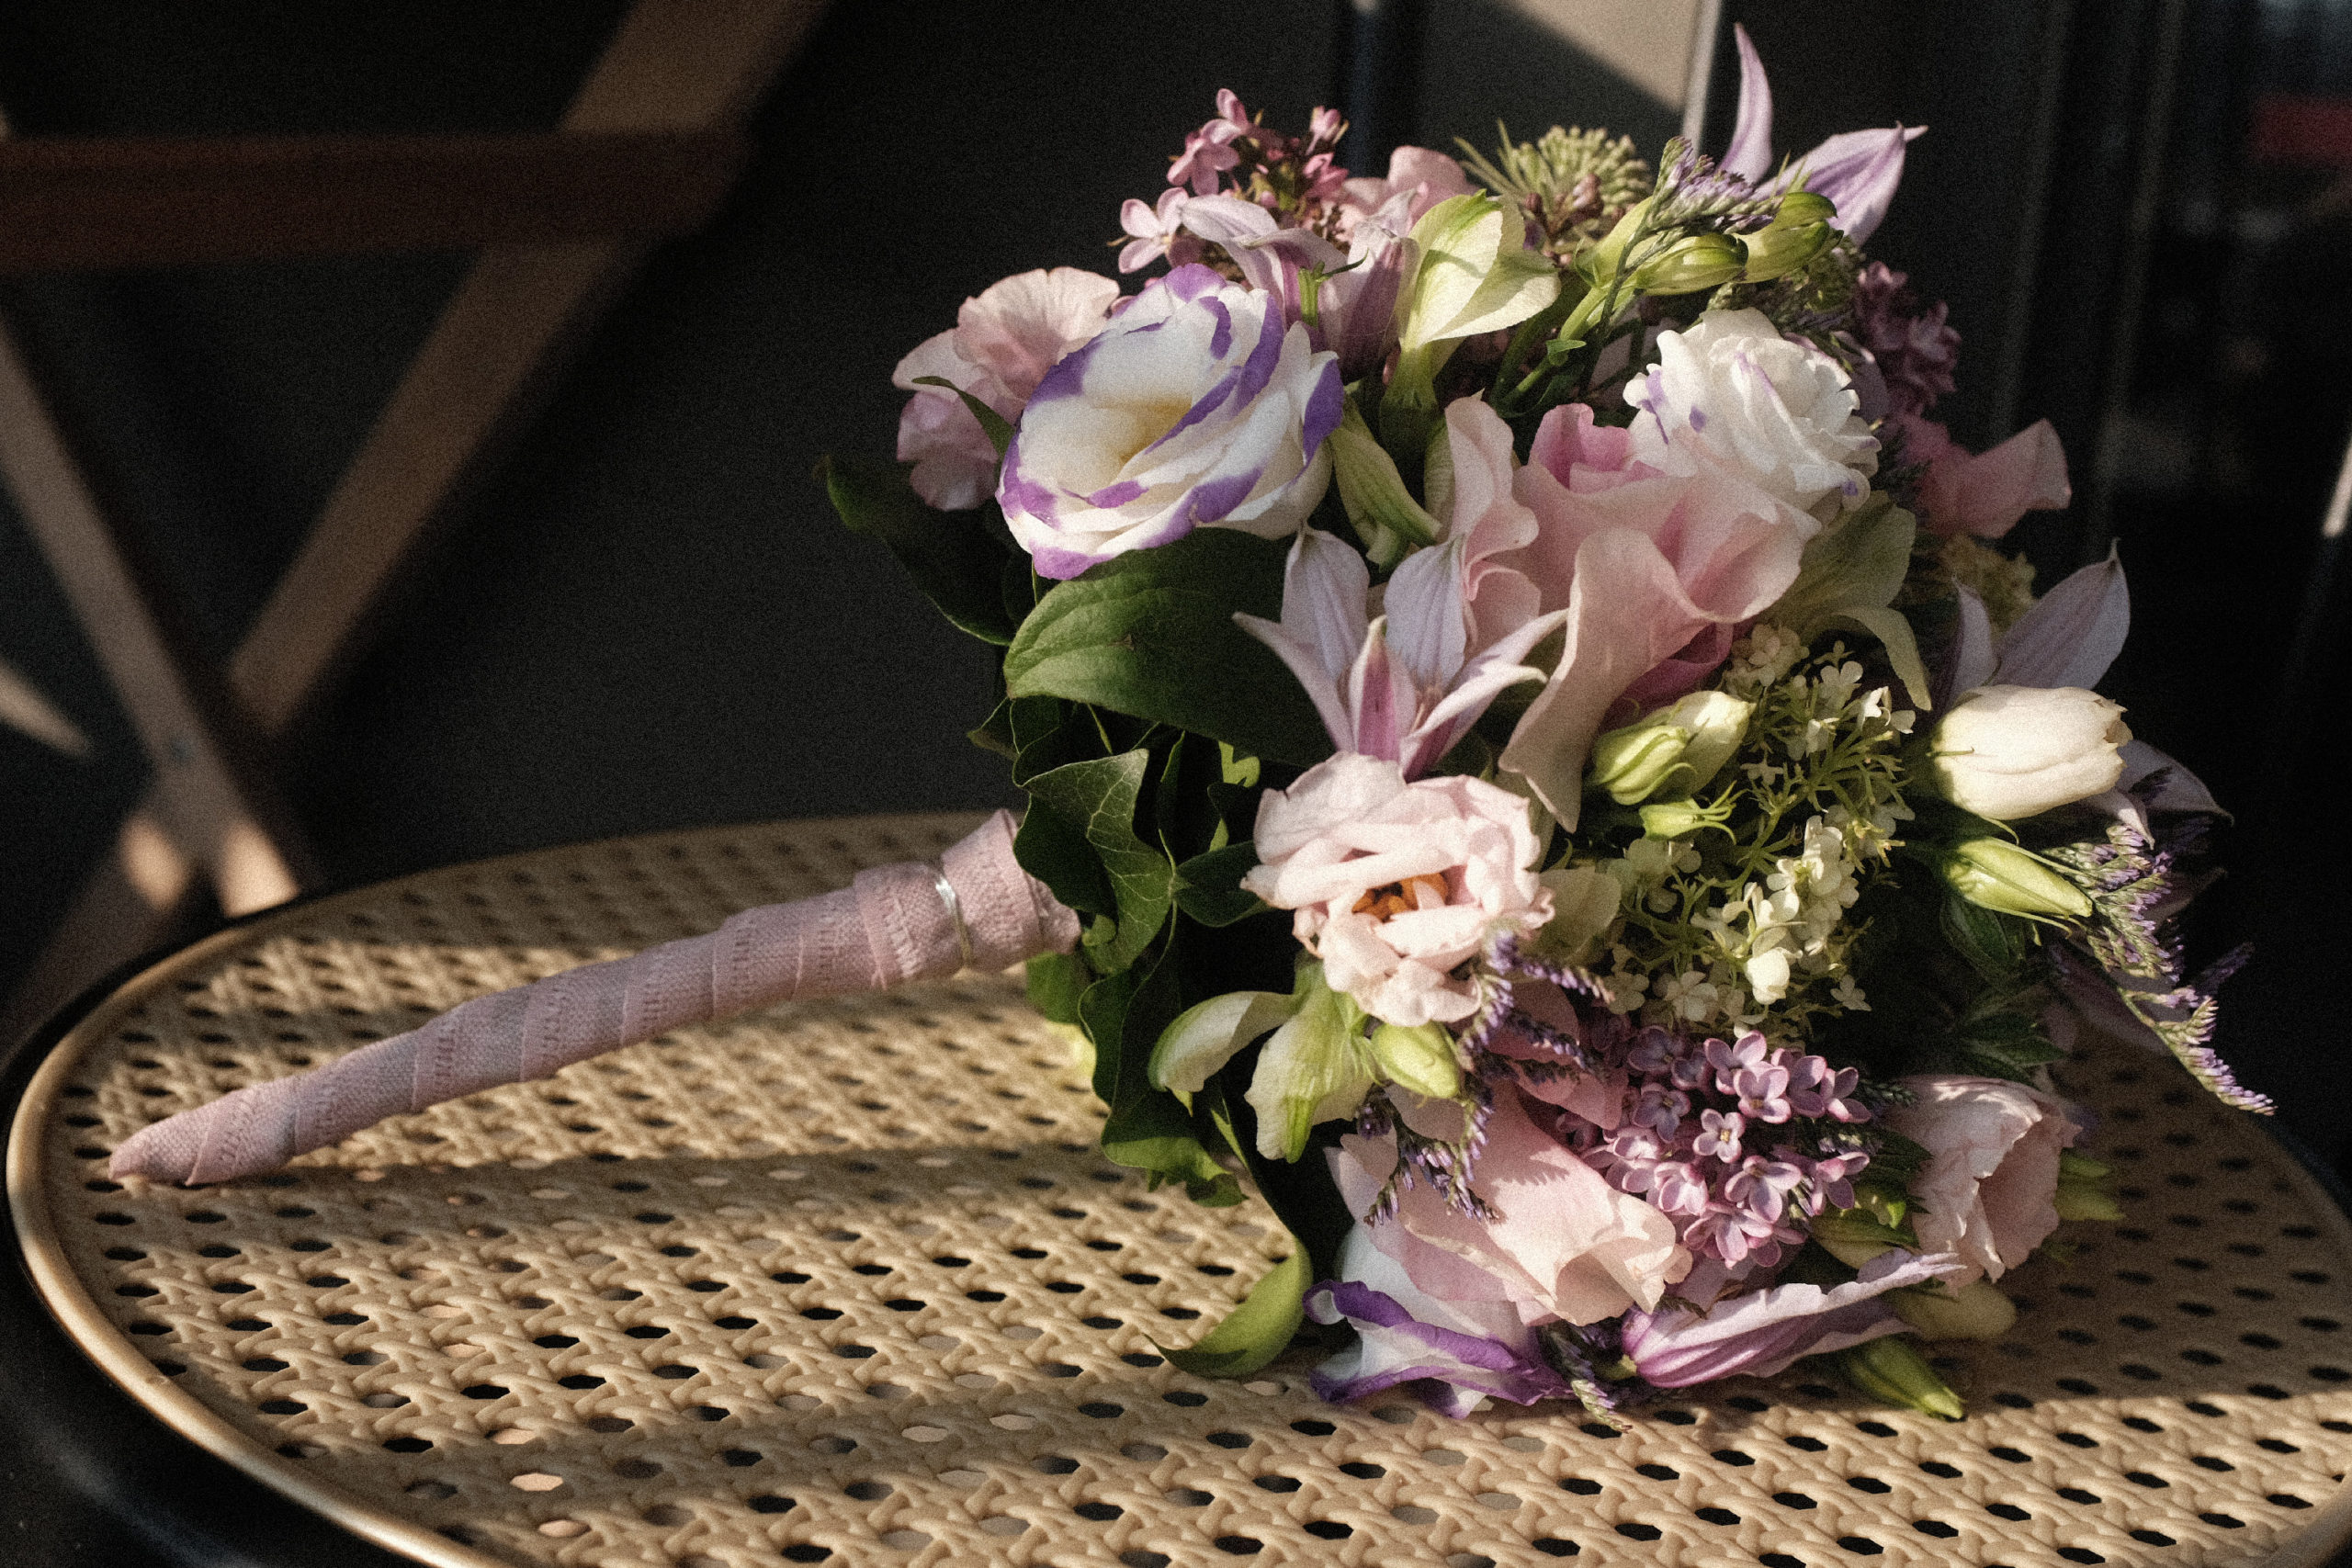 Bouquet de mariée piqué, technique du rayonnement. Les fleurs sont piquées dans une boule de mousse synthétique, piégée dans une structure en fil de fer épais floratapé.